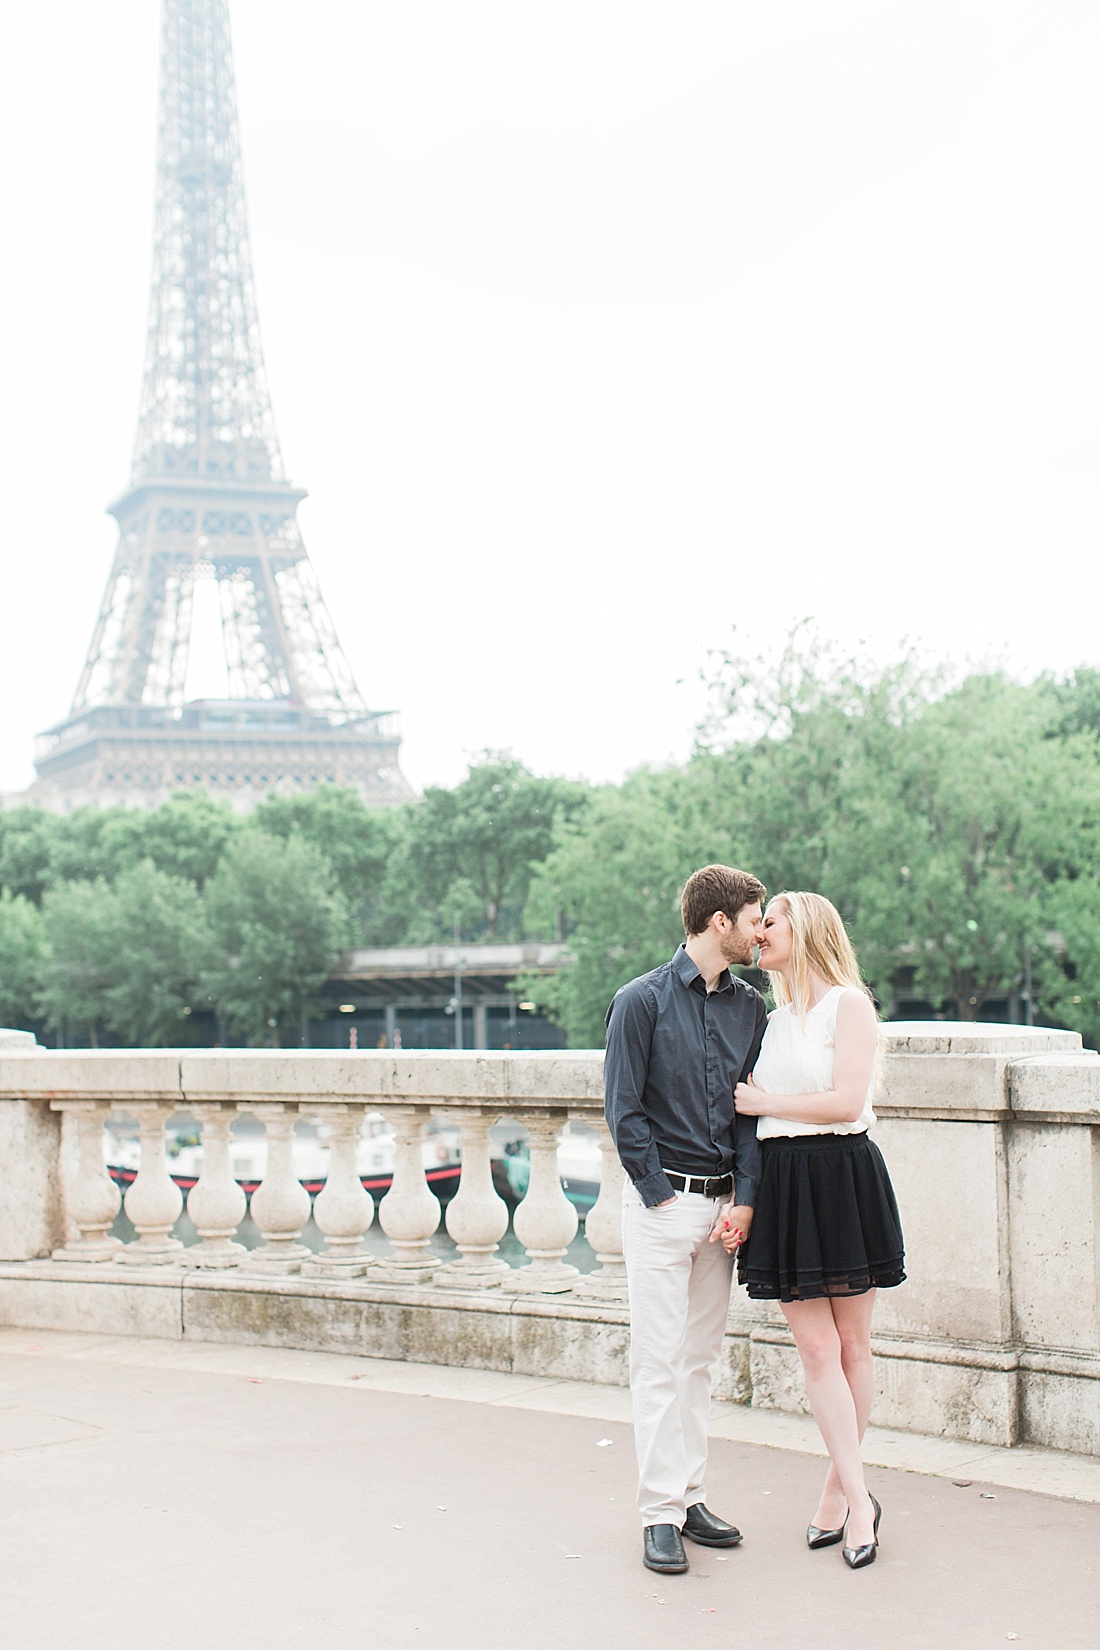 Paris, France engagement photographer | Abby Grace